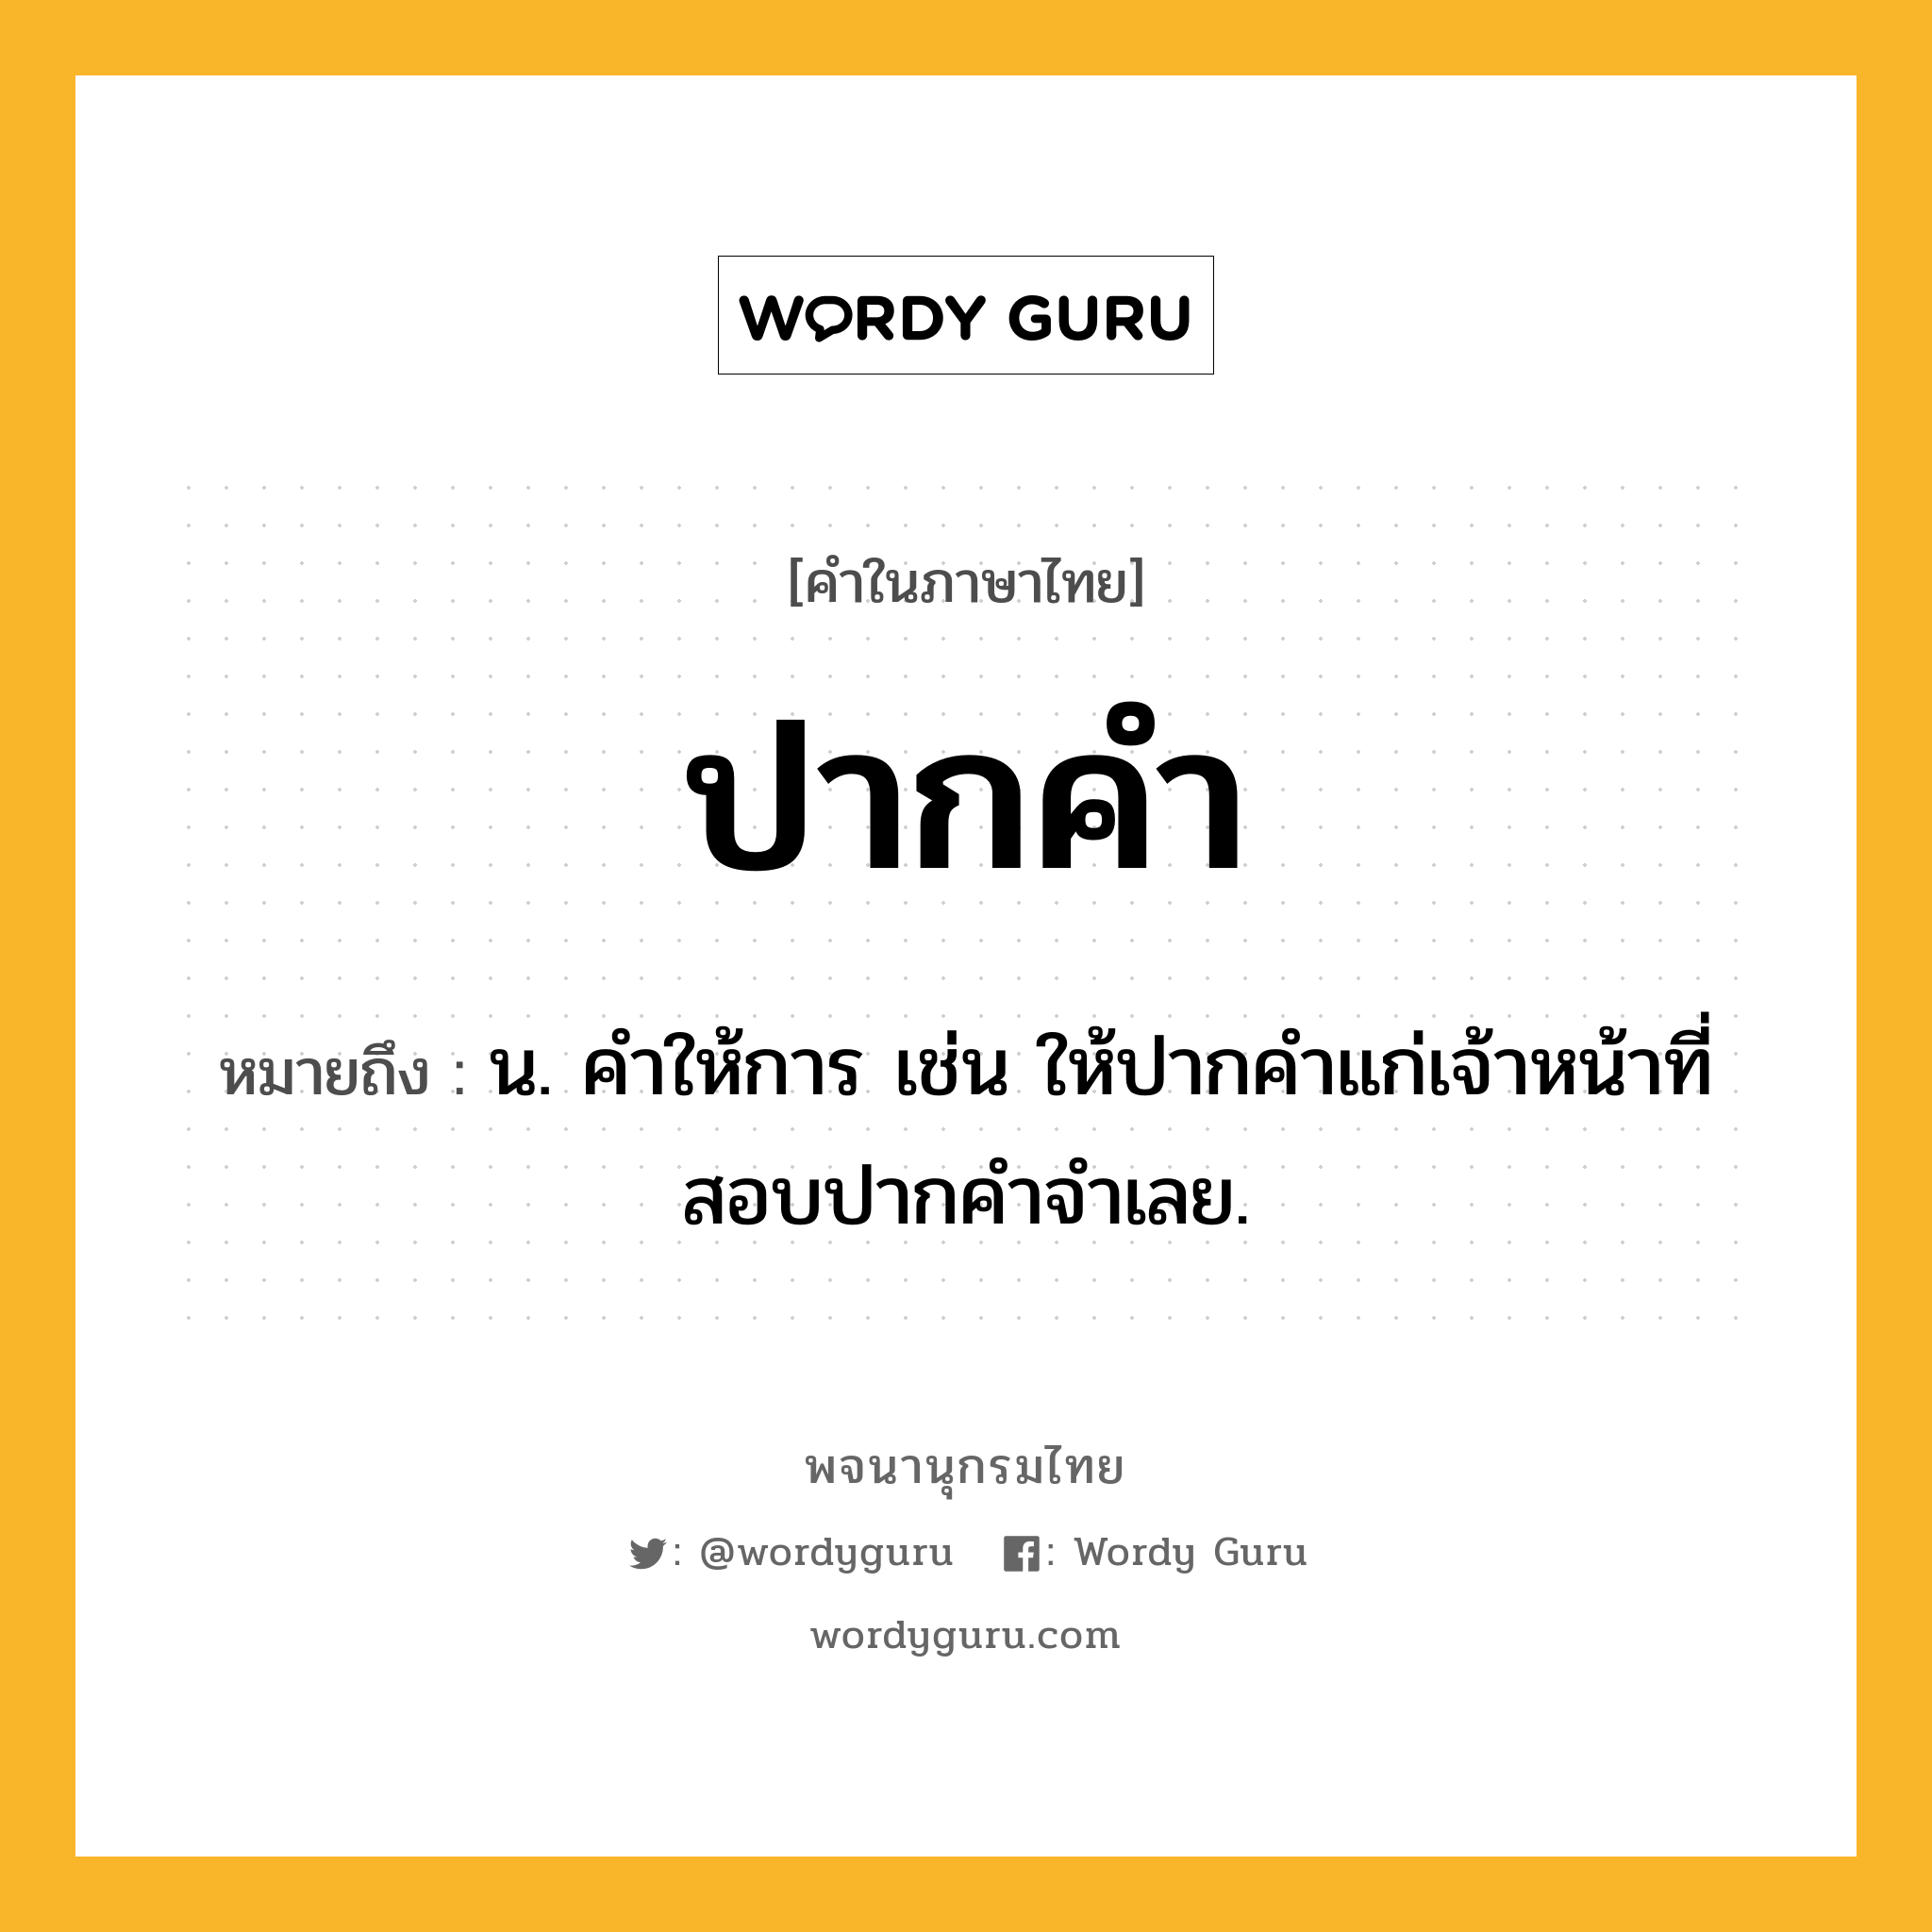 ปากคำ ความหมาย หมายถึงอะไร?, คำในภาษาไทย ปากคำ หมายถึง น. คําให้การ เช่น ให้ปากคำแก่เจ้าหน้าที่สอบปากคำจำเลย.